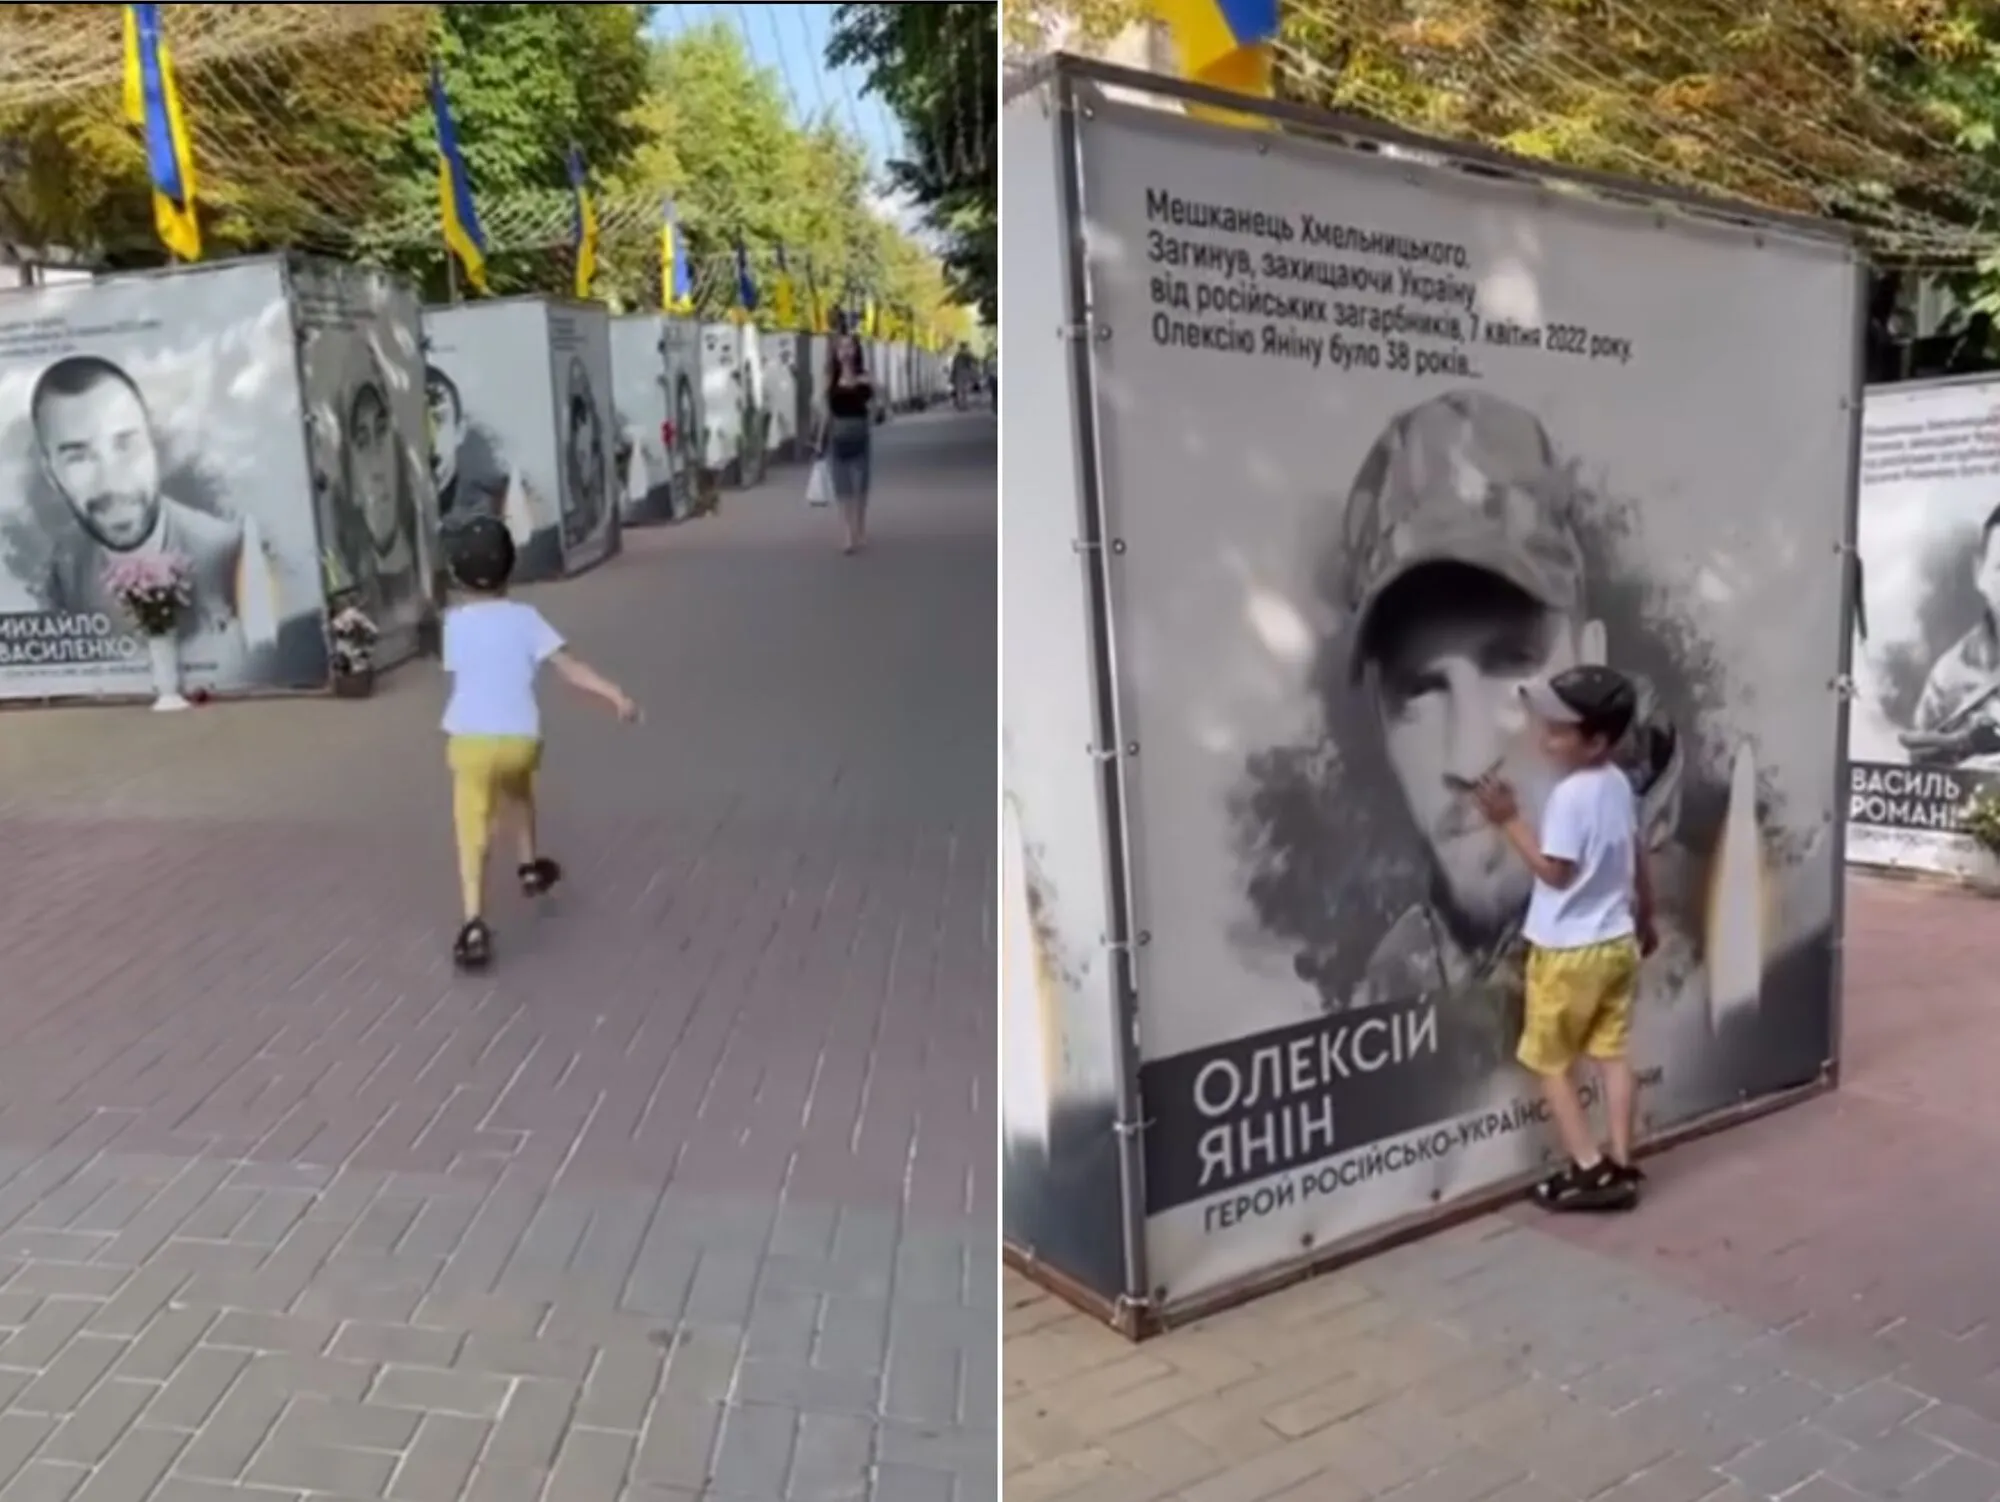 Відео, як чотирирічний хлопчик прийшов відвідати свого тата-героя до пам’ятної дошки полеглих, довело мережу до сліз qhtikziqxiqant